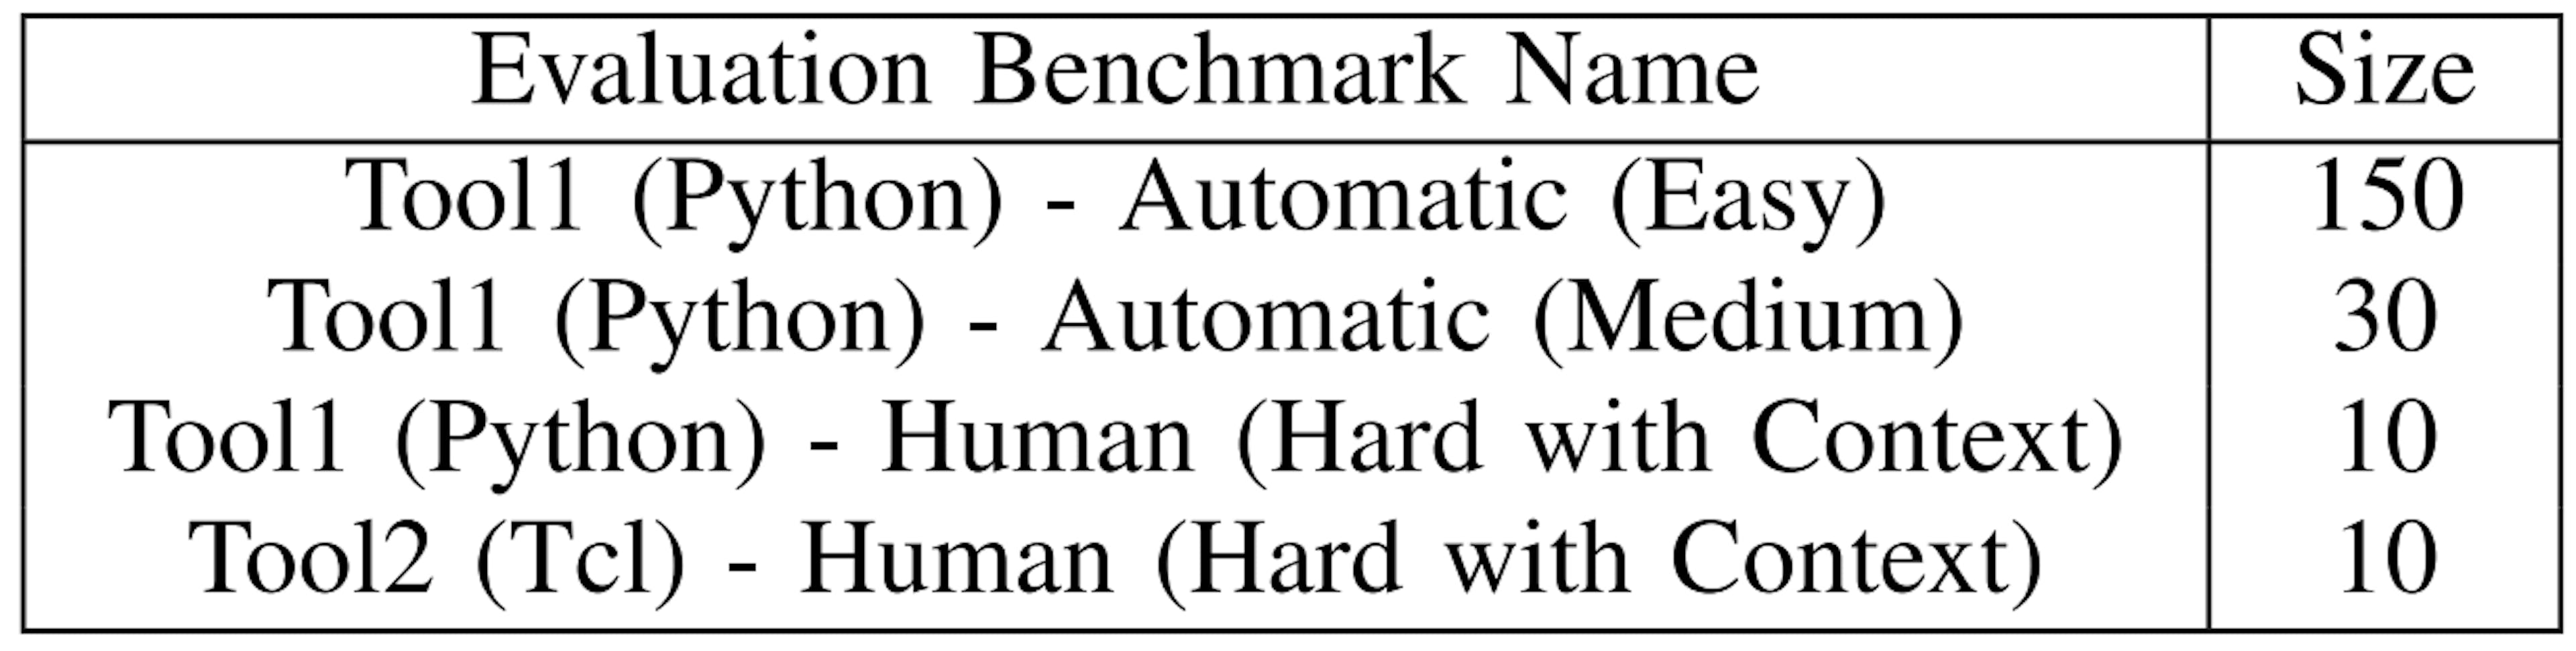 TABLE V: EDA Script Generation Evaluation Benchmarks